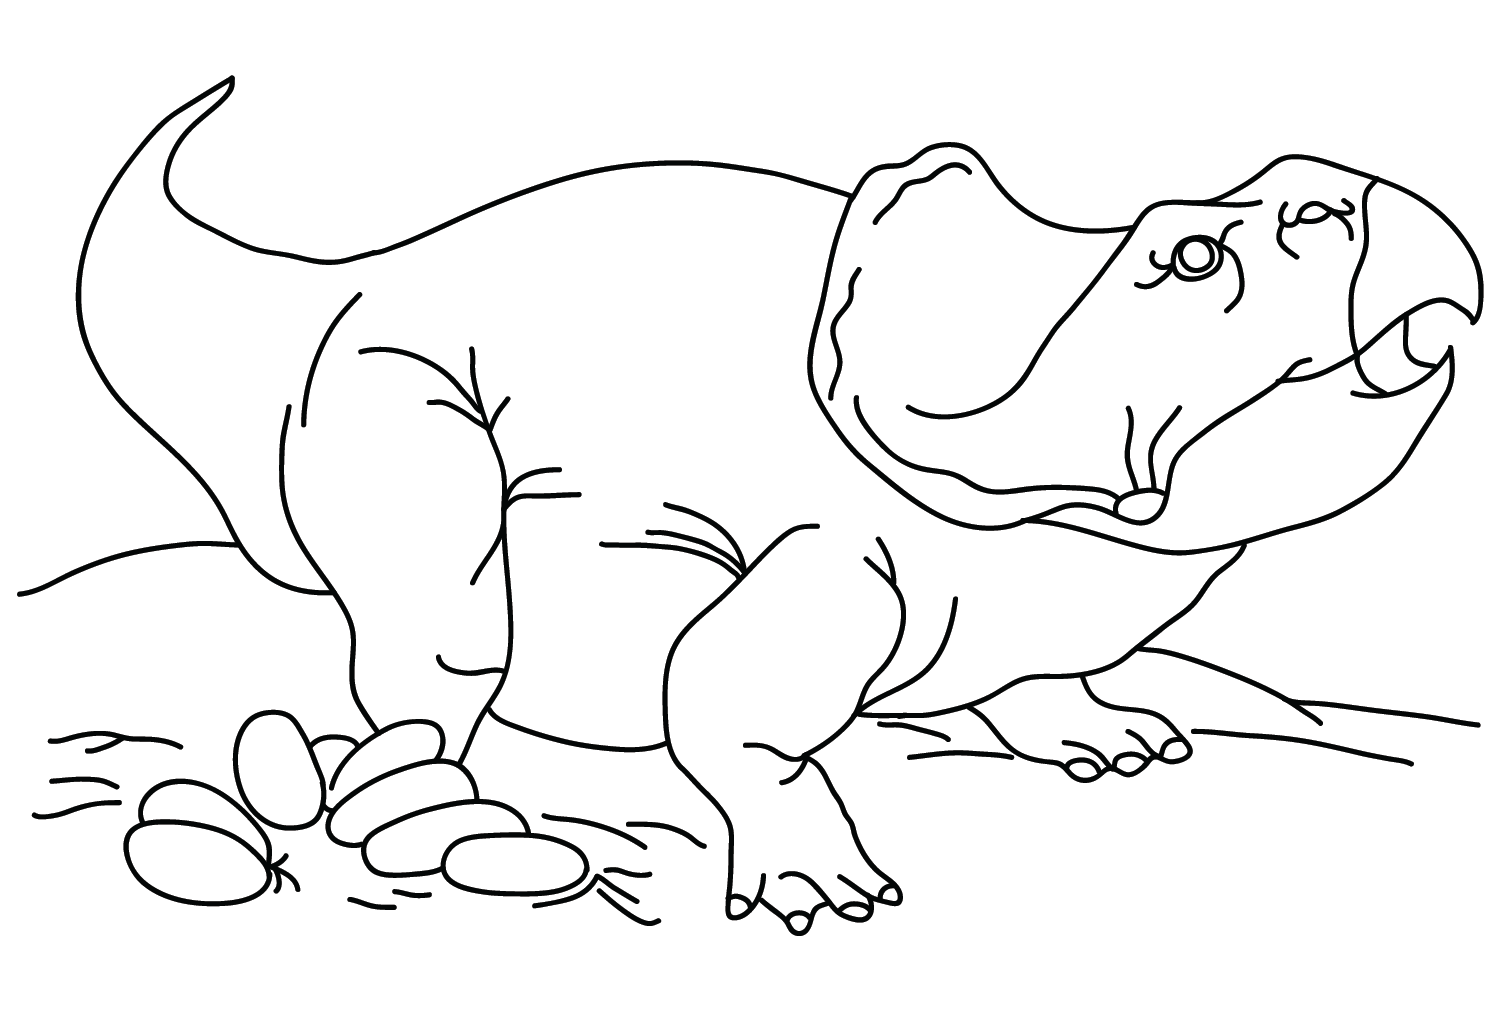 Página para colorir de protoceratops e ovos de protoceratops